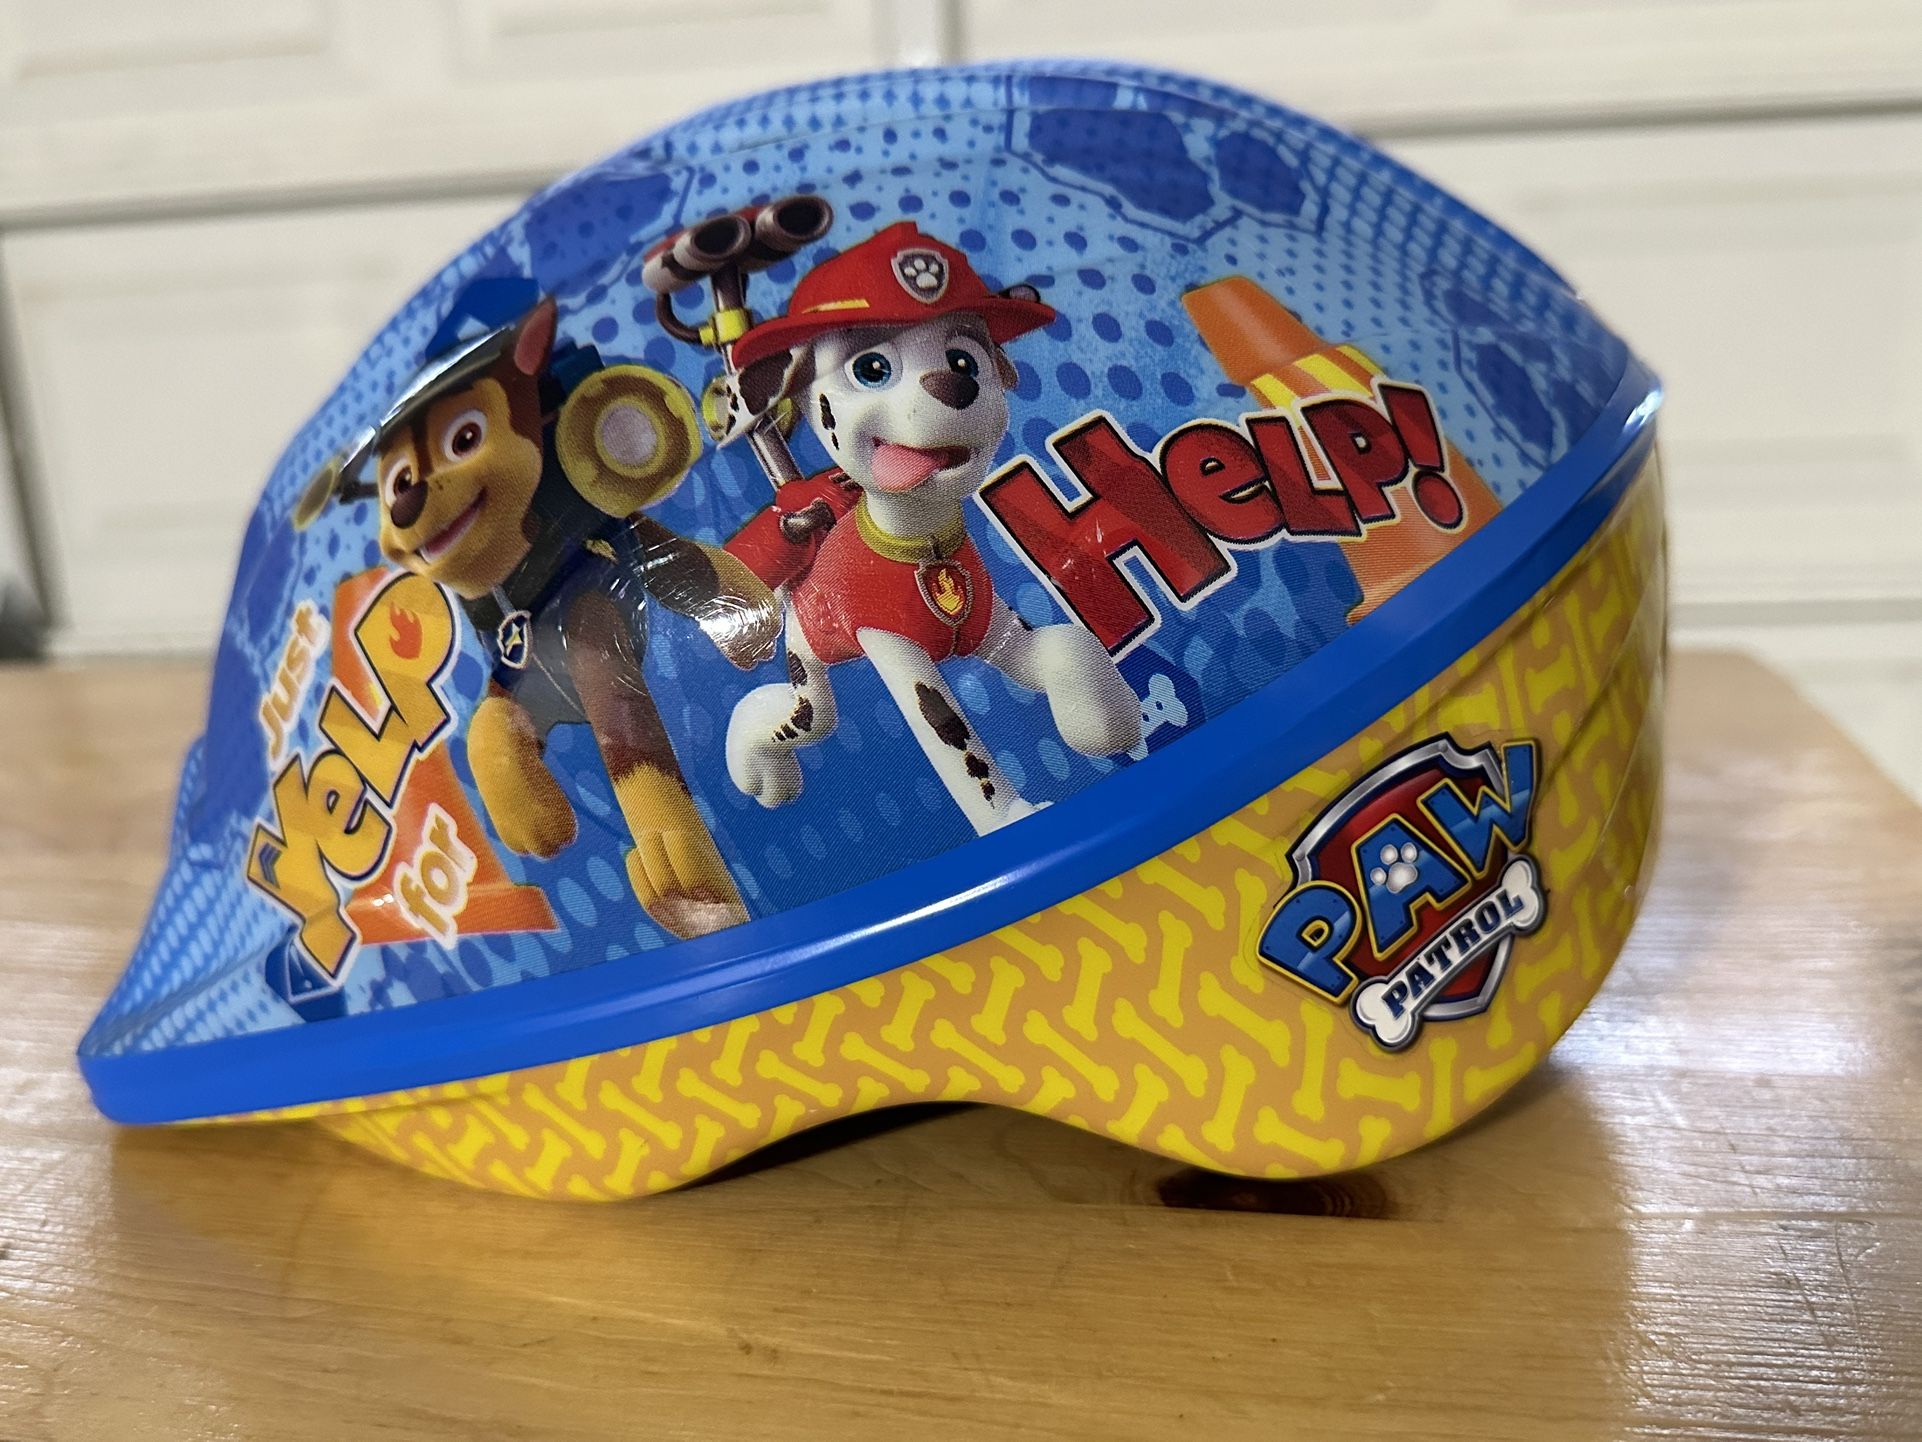 Nickelodeon Paw Patrol Kids Bike Helmet Toddler 3-5 Yrs. Adjustable